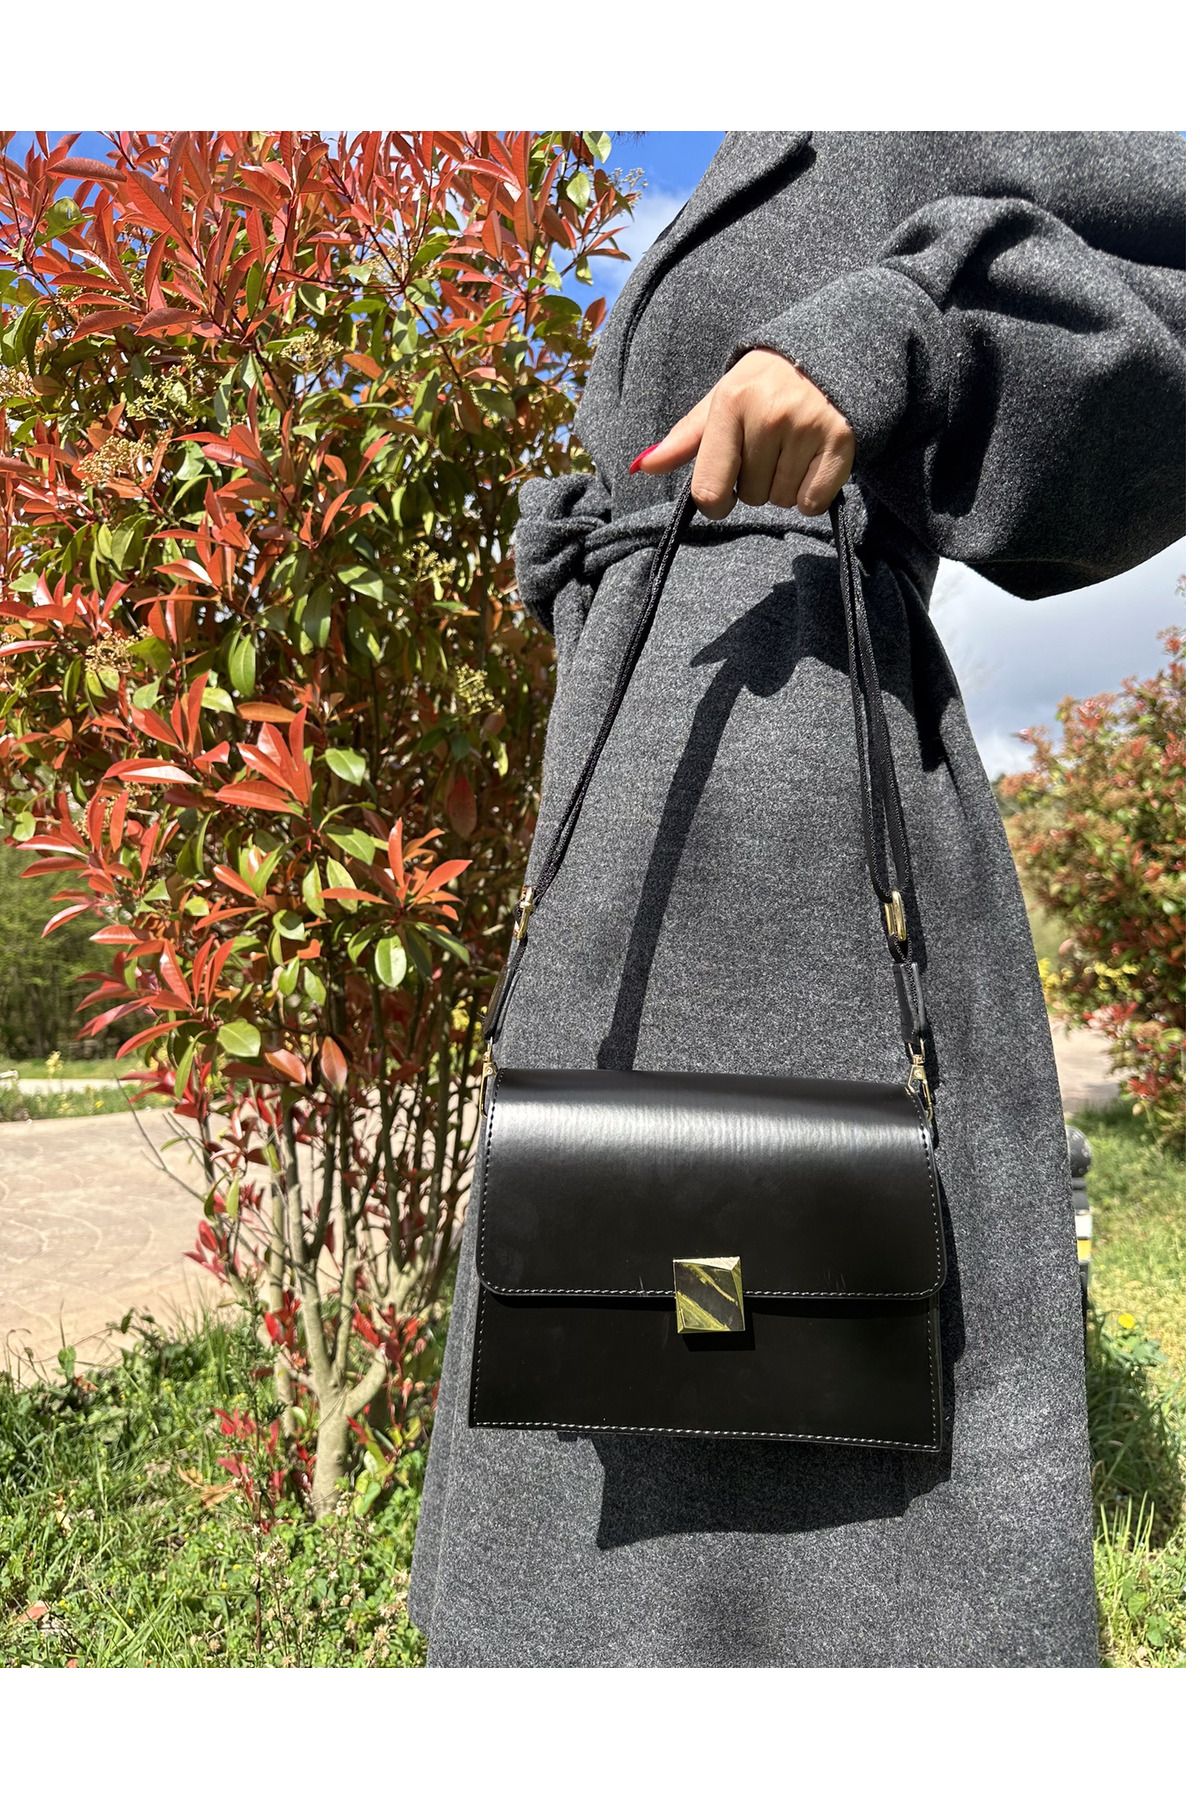 gabies Kadın siyah şık tasarım el ve omuz çantası